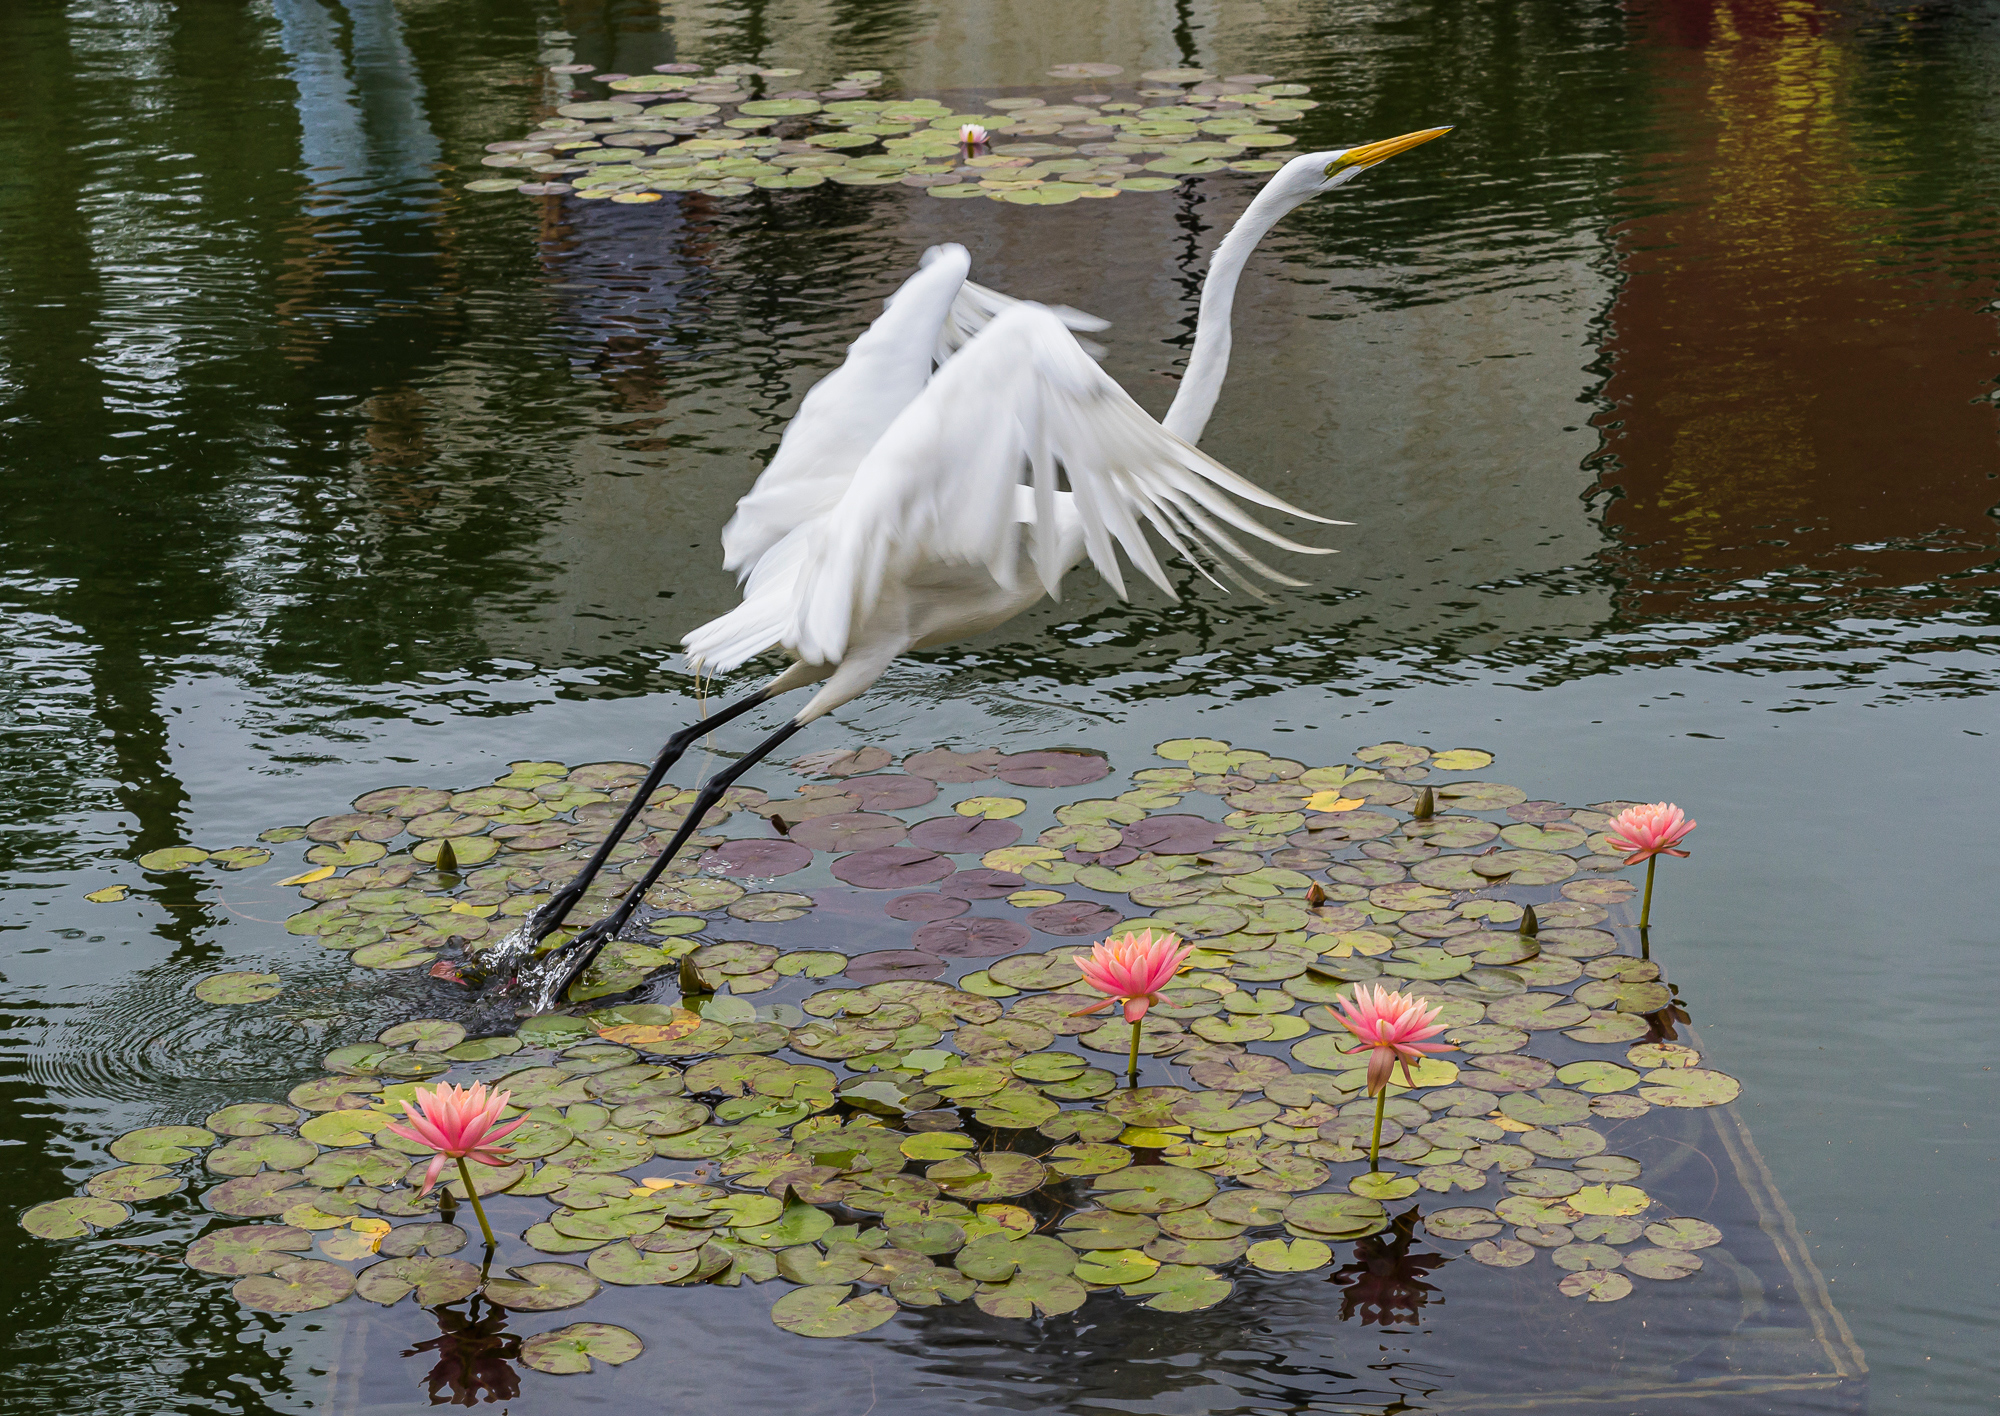 “Wild Egret Leaving a Koi Pond”, 2015, Balboa Park, San Diego